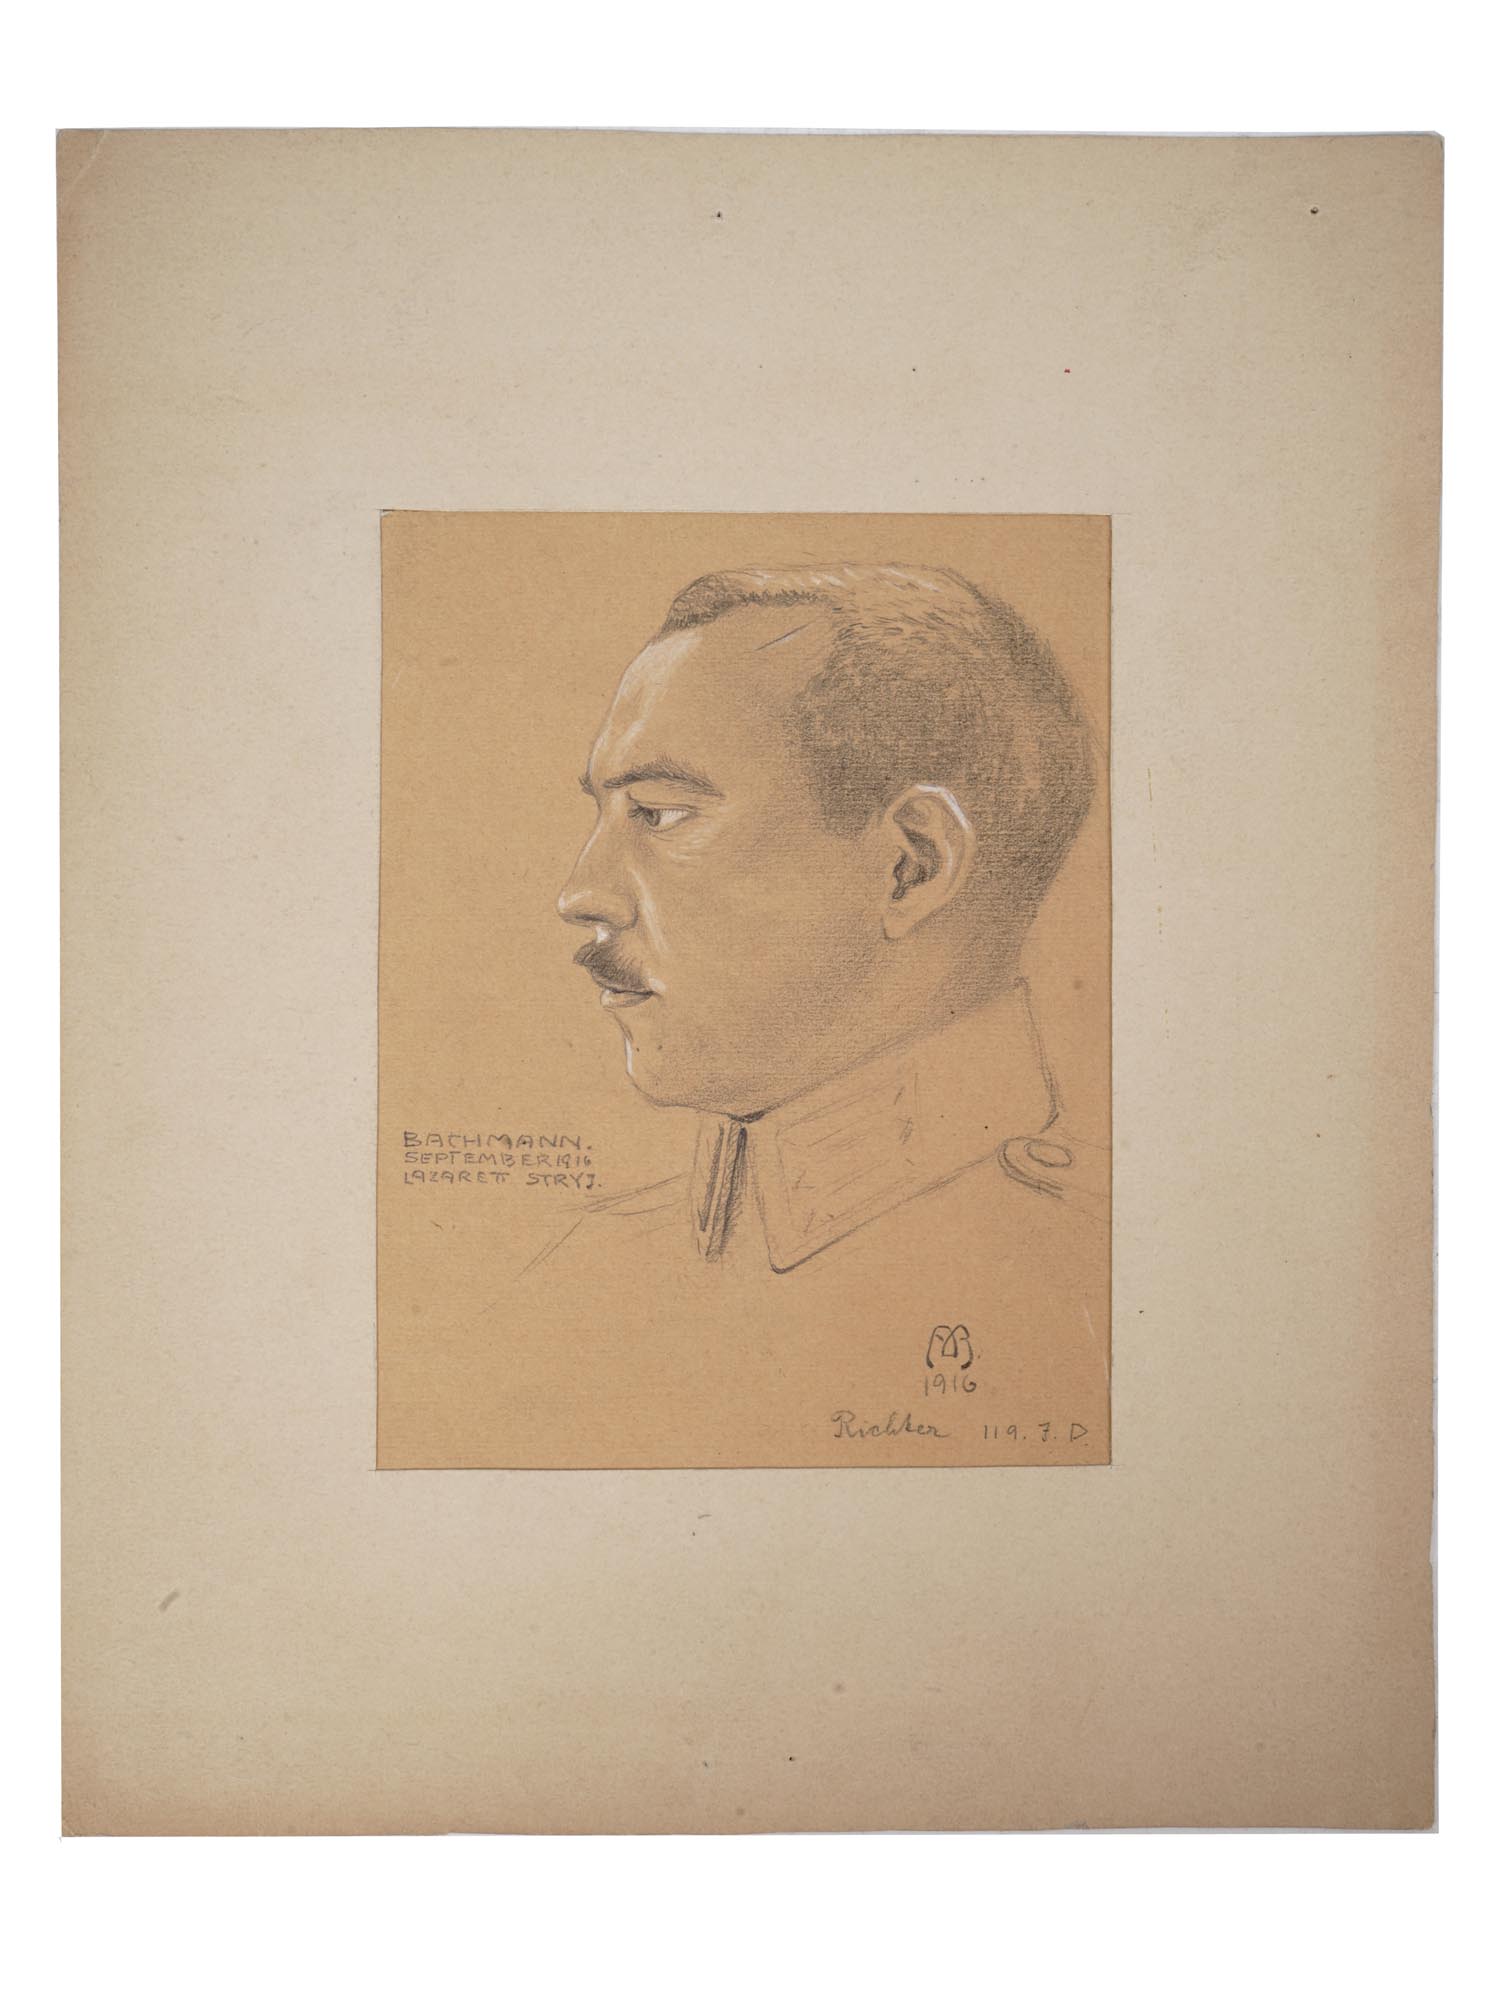 ANTIQUE 1916 GERMAN GRAPHITE PORTRAIT OF BACHMANN